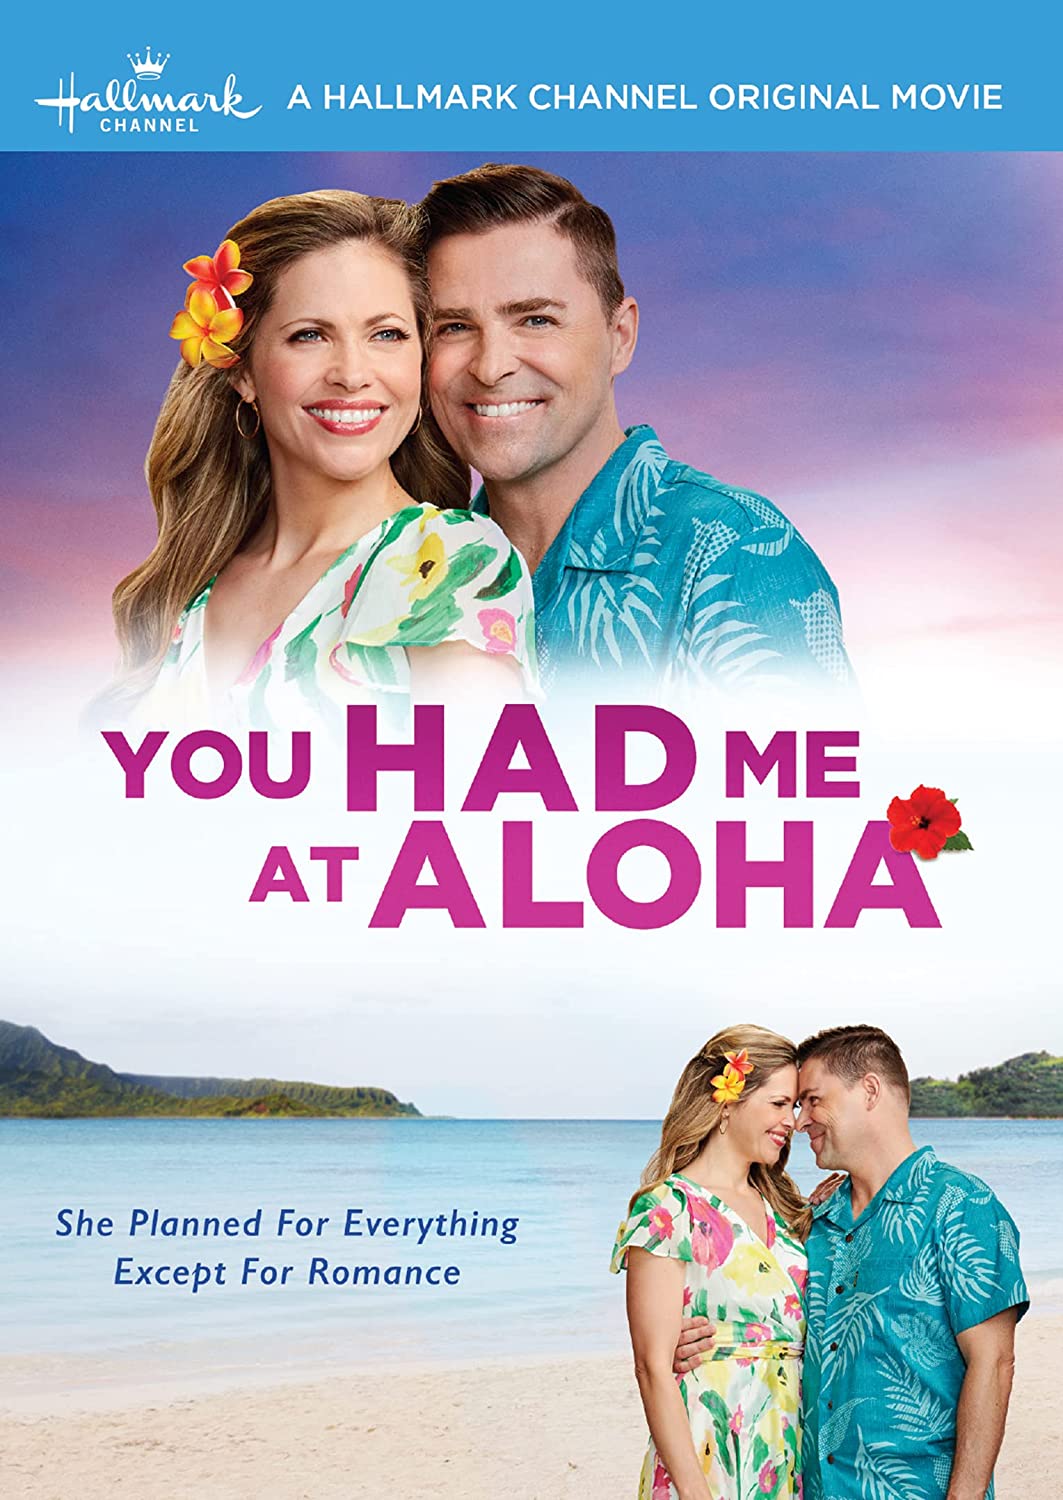 You had me at aloha 